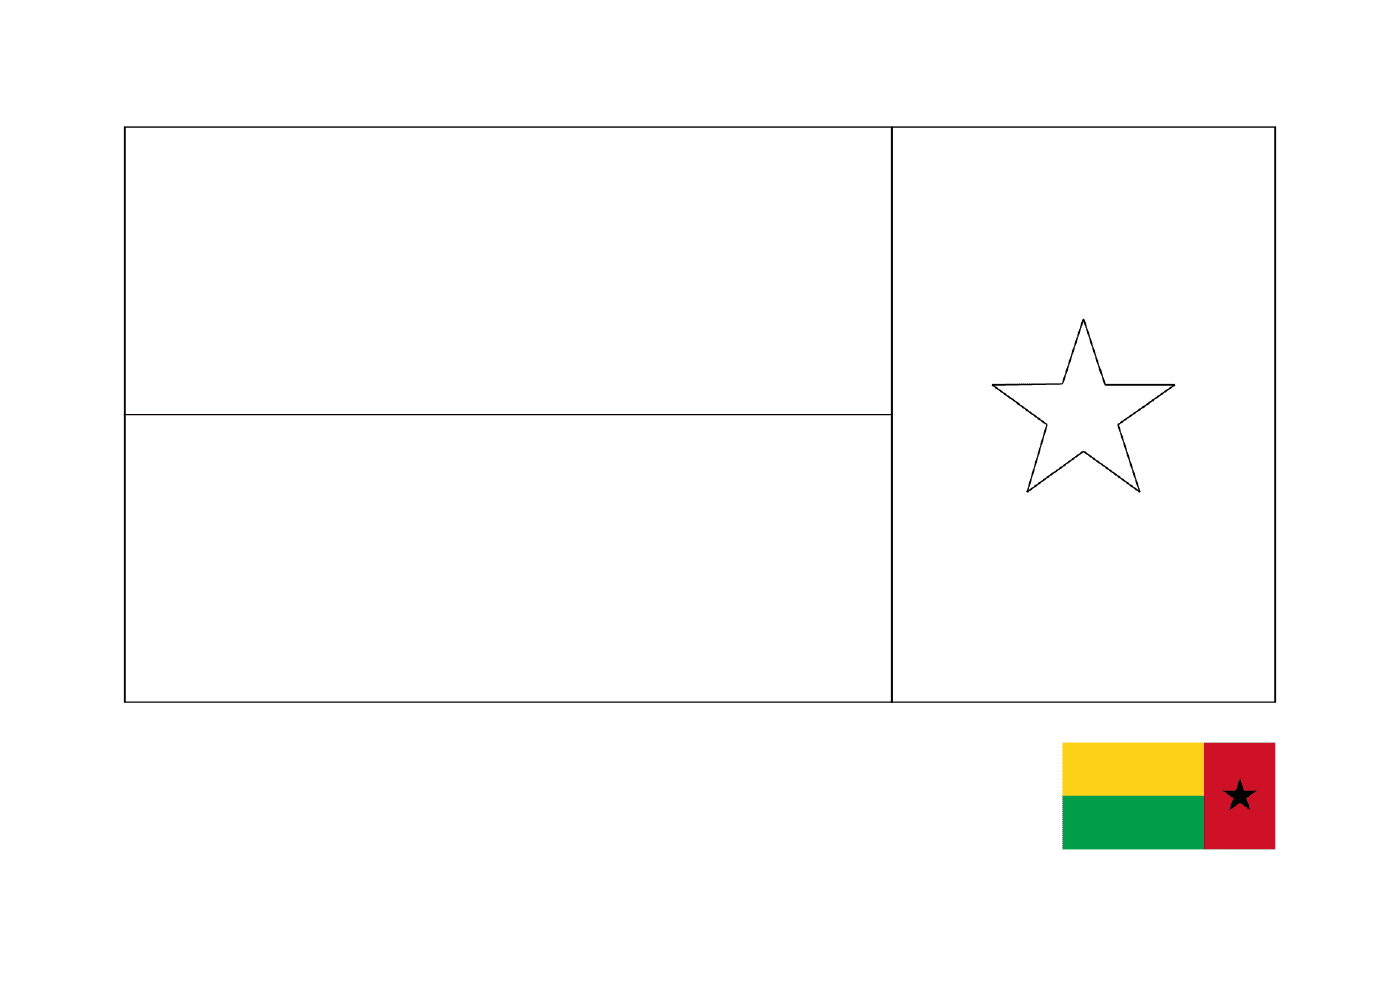  A Flag of Guinea 